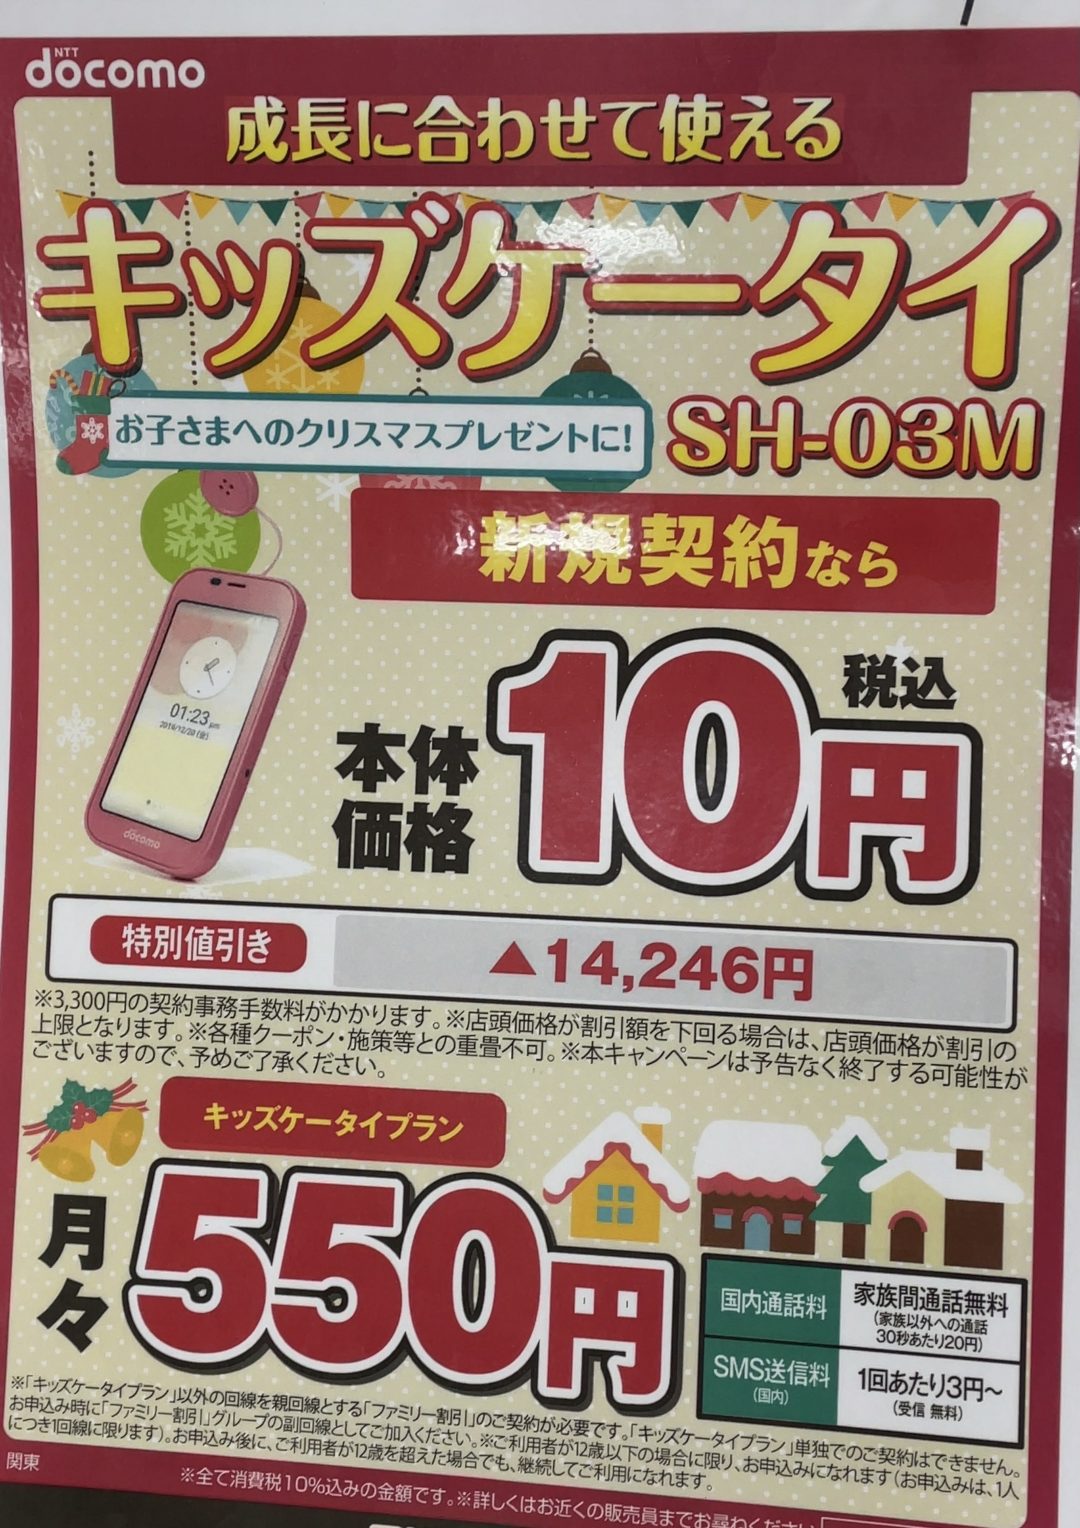 お子さまへのクリスマスプレセントに ヨドバシでドコモのキッズケータイ Sh 03m が新規で一括10円